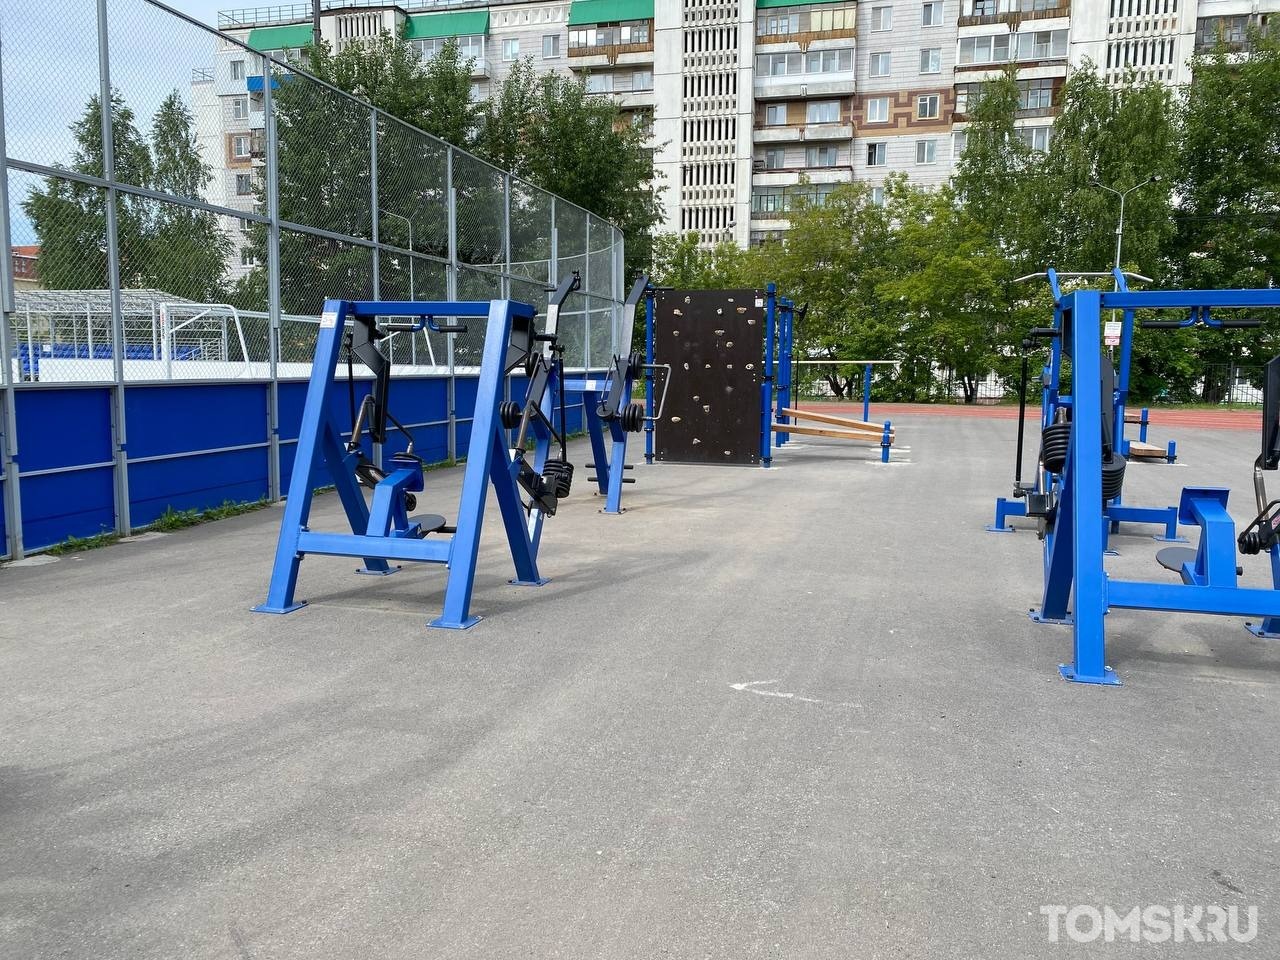 В Томске появится спортивная площадка с WiFi и зоной для воркаута 